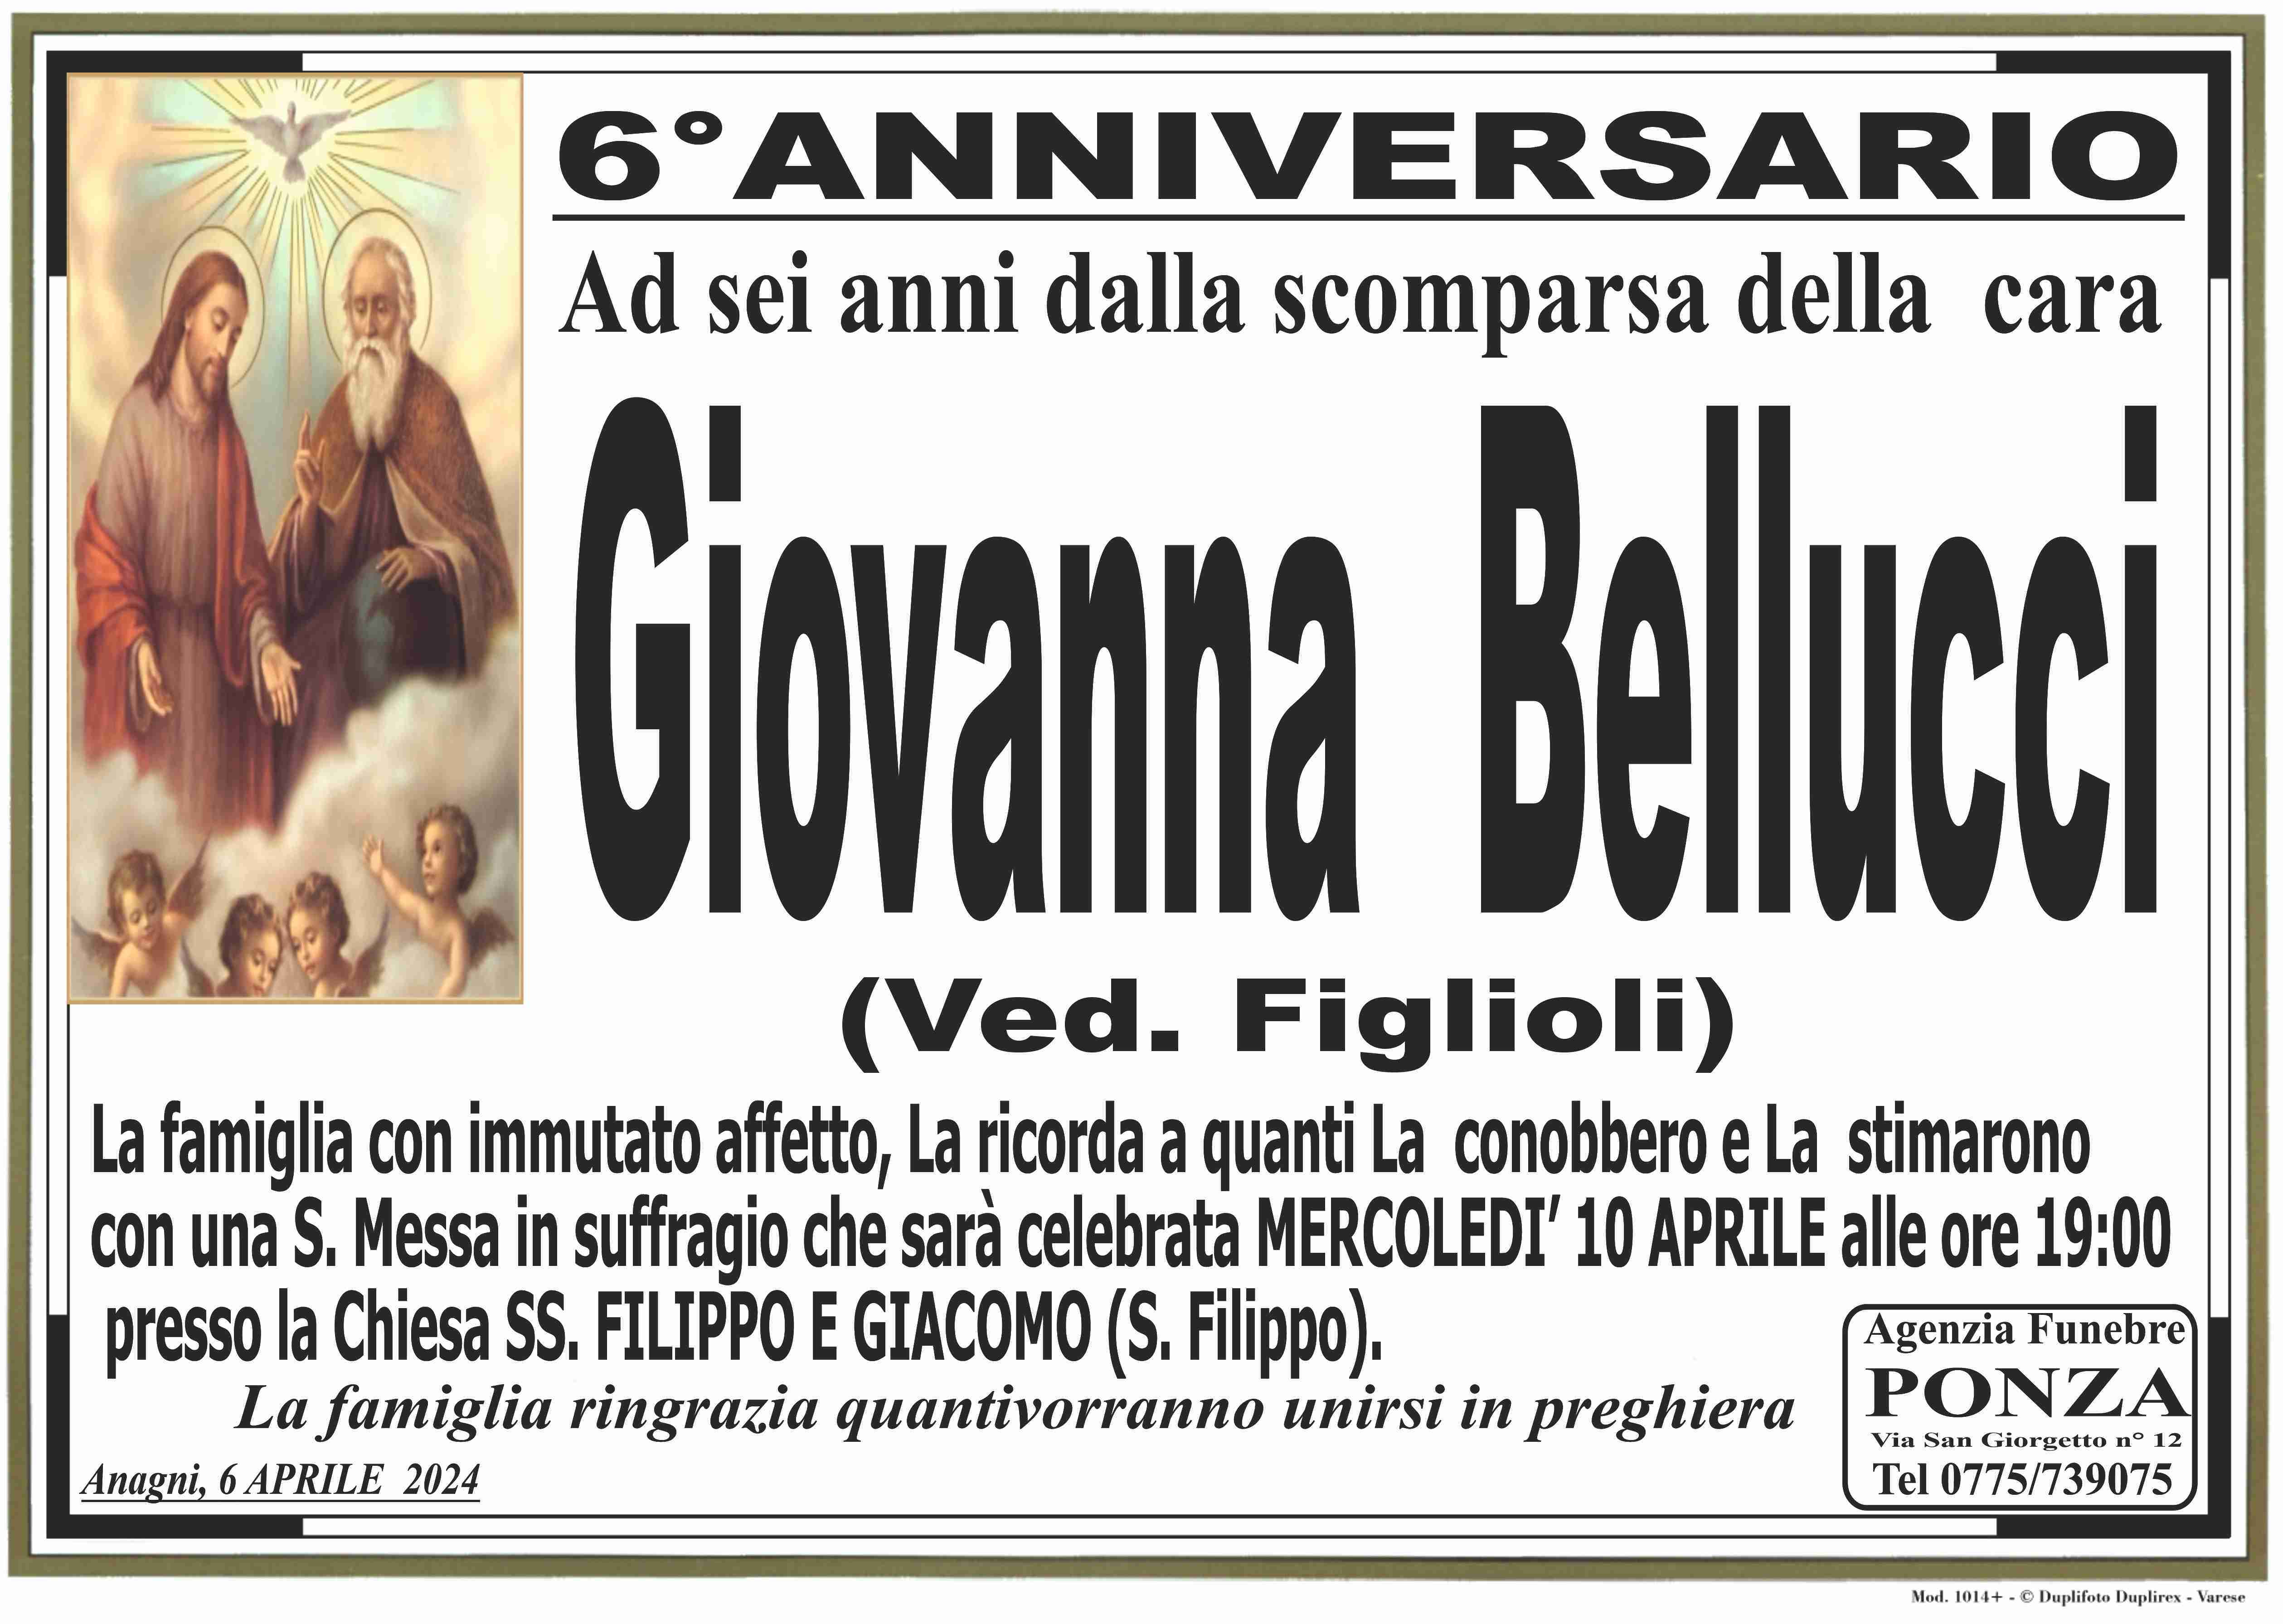 Giovanna Bellucci